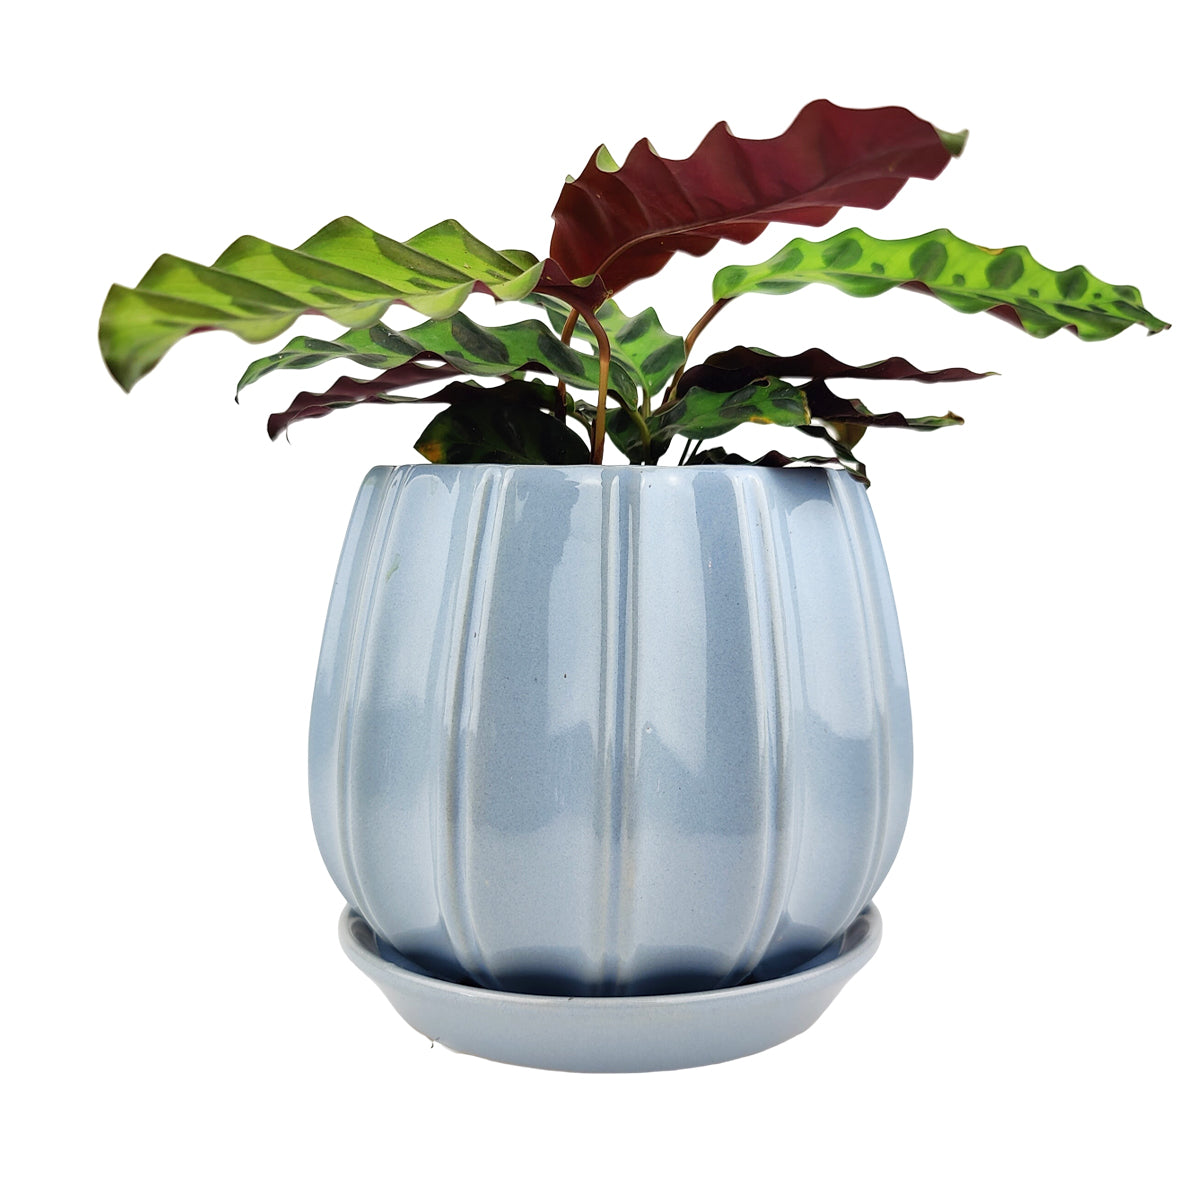 inch Blue Glazed Ceramic Contour Planter - Houseplant Pot for Sale - Succulents Box